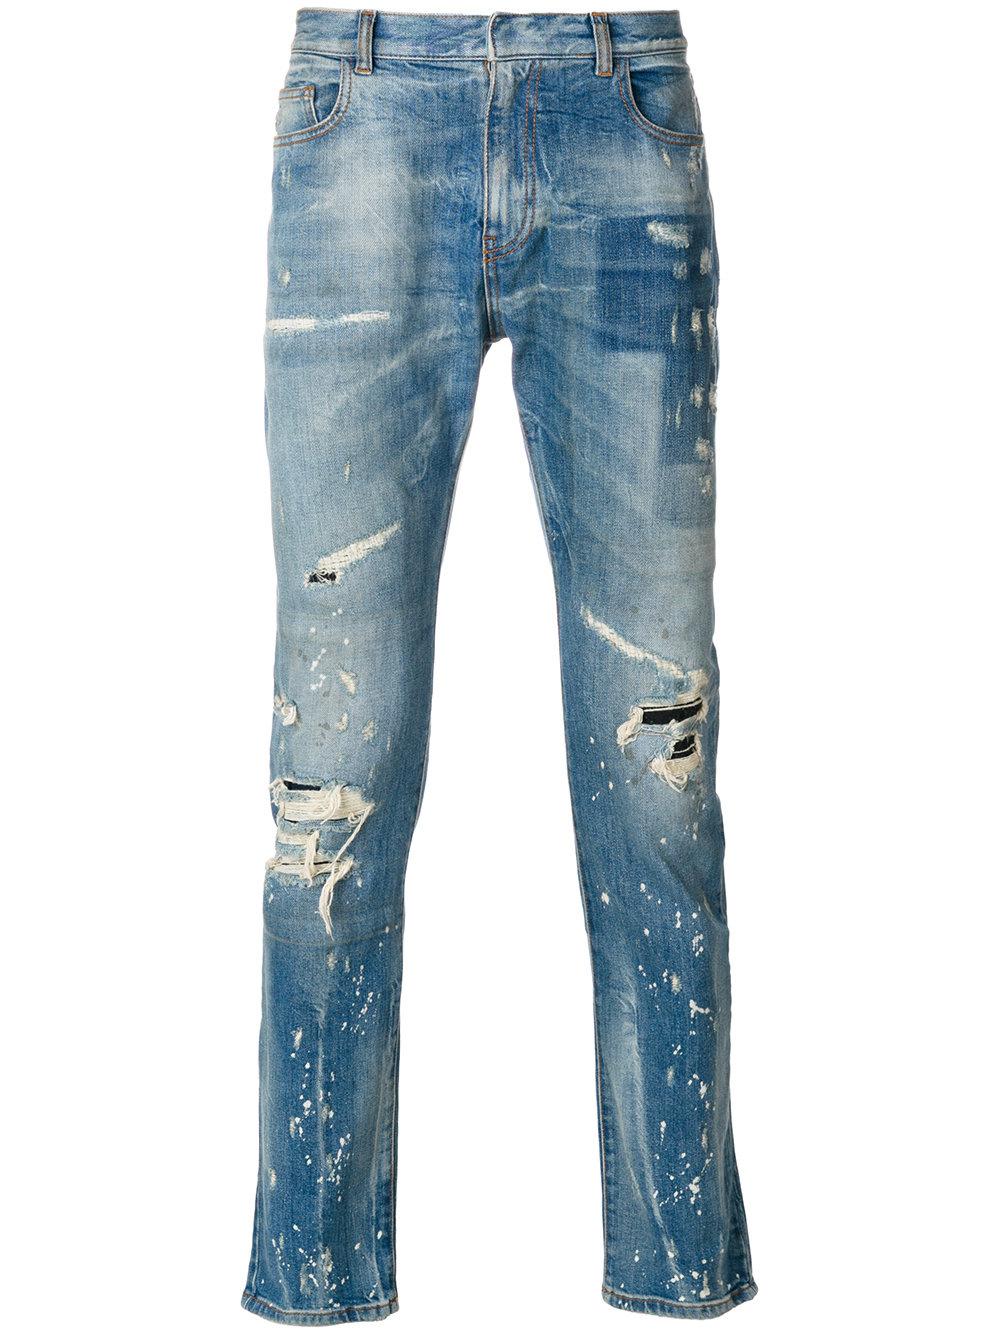 Faith Connexion Denim Paint Splatter Jeans in Blue for Men - Lyst